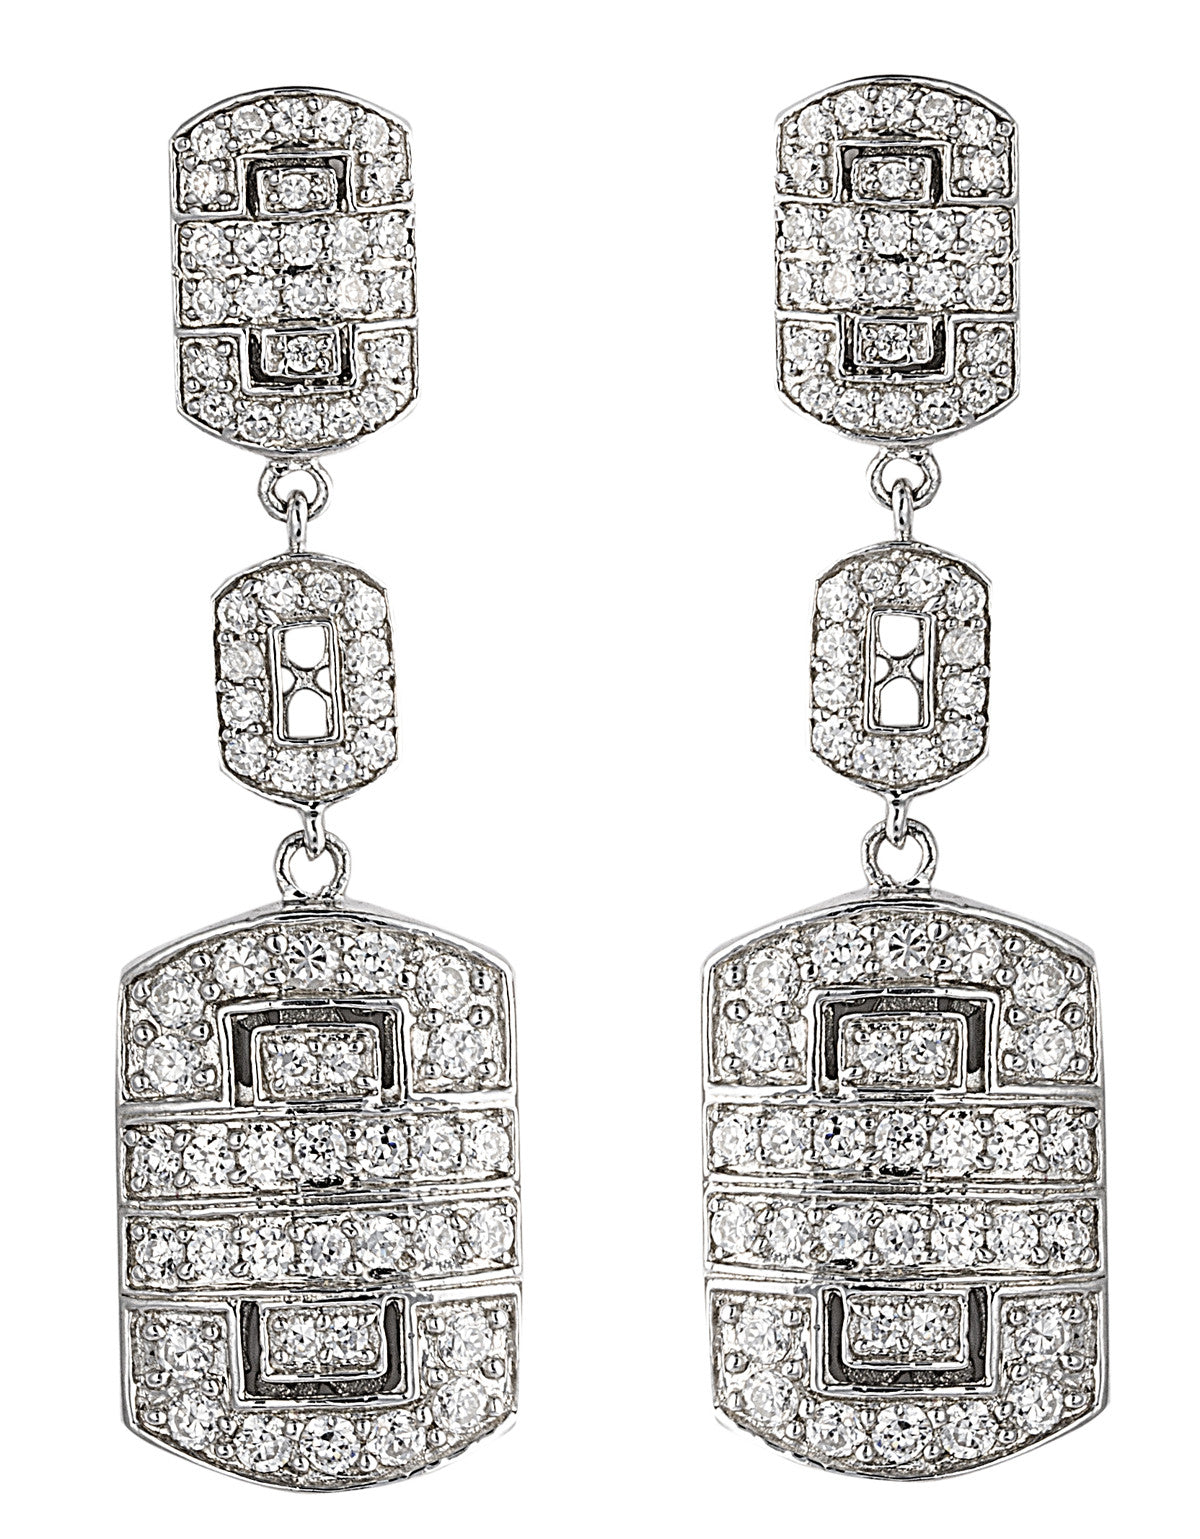 Great Gatsby Earrings in 925 Sterling Silver & Cubic Zirconia Stones. Worldwide shipping.